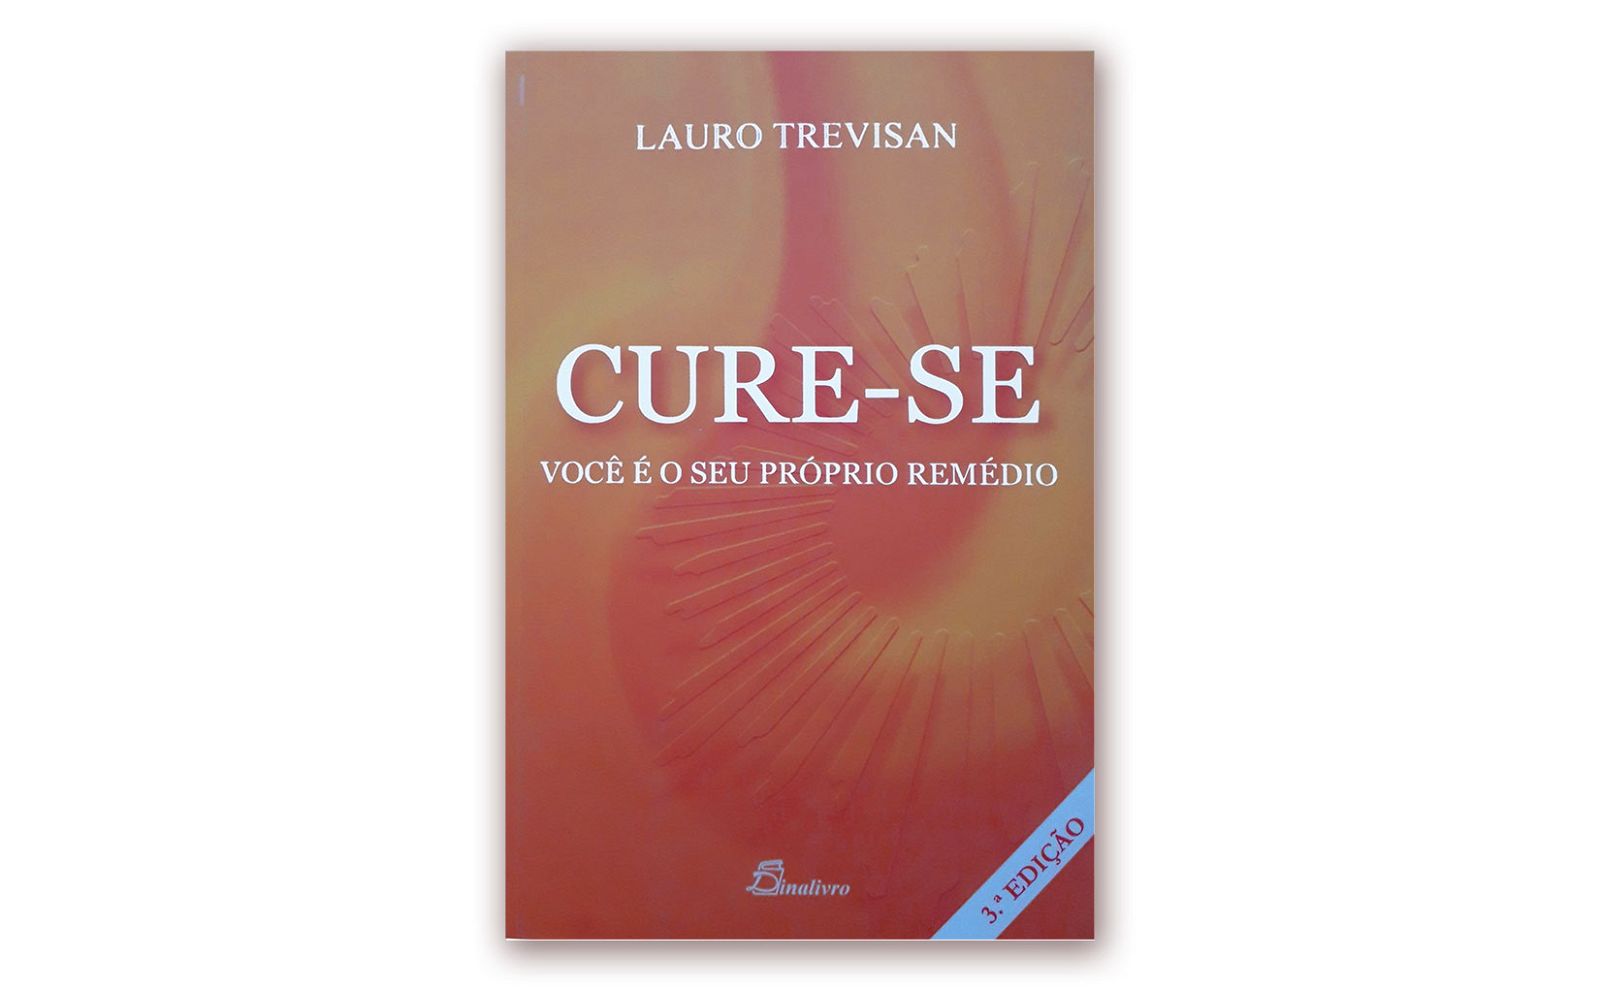 Lauro Trevisan – “CURE-SE VOCÊ É O SEU PRÓPRIO REMÉDIO”